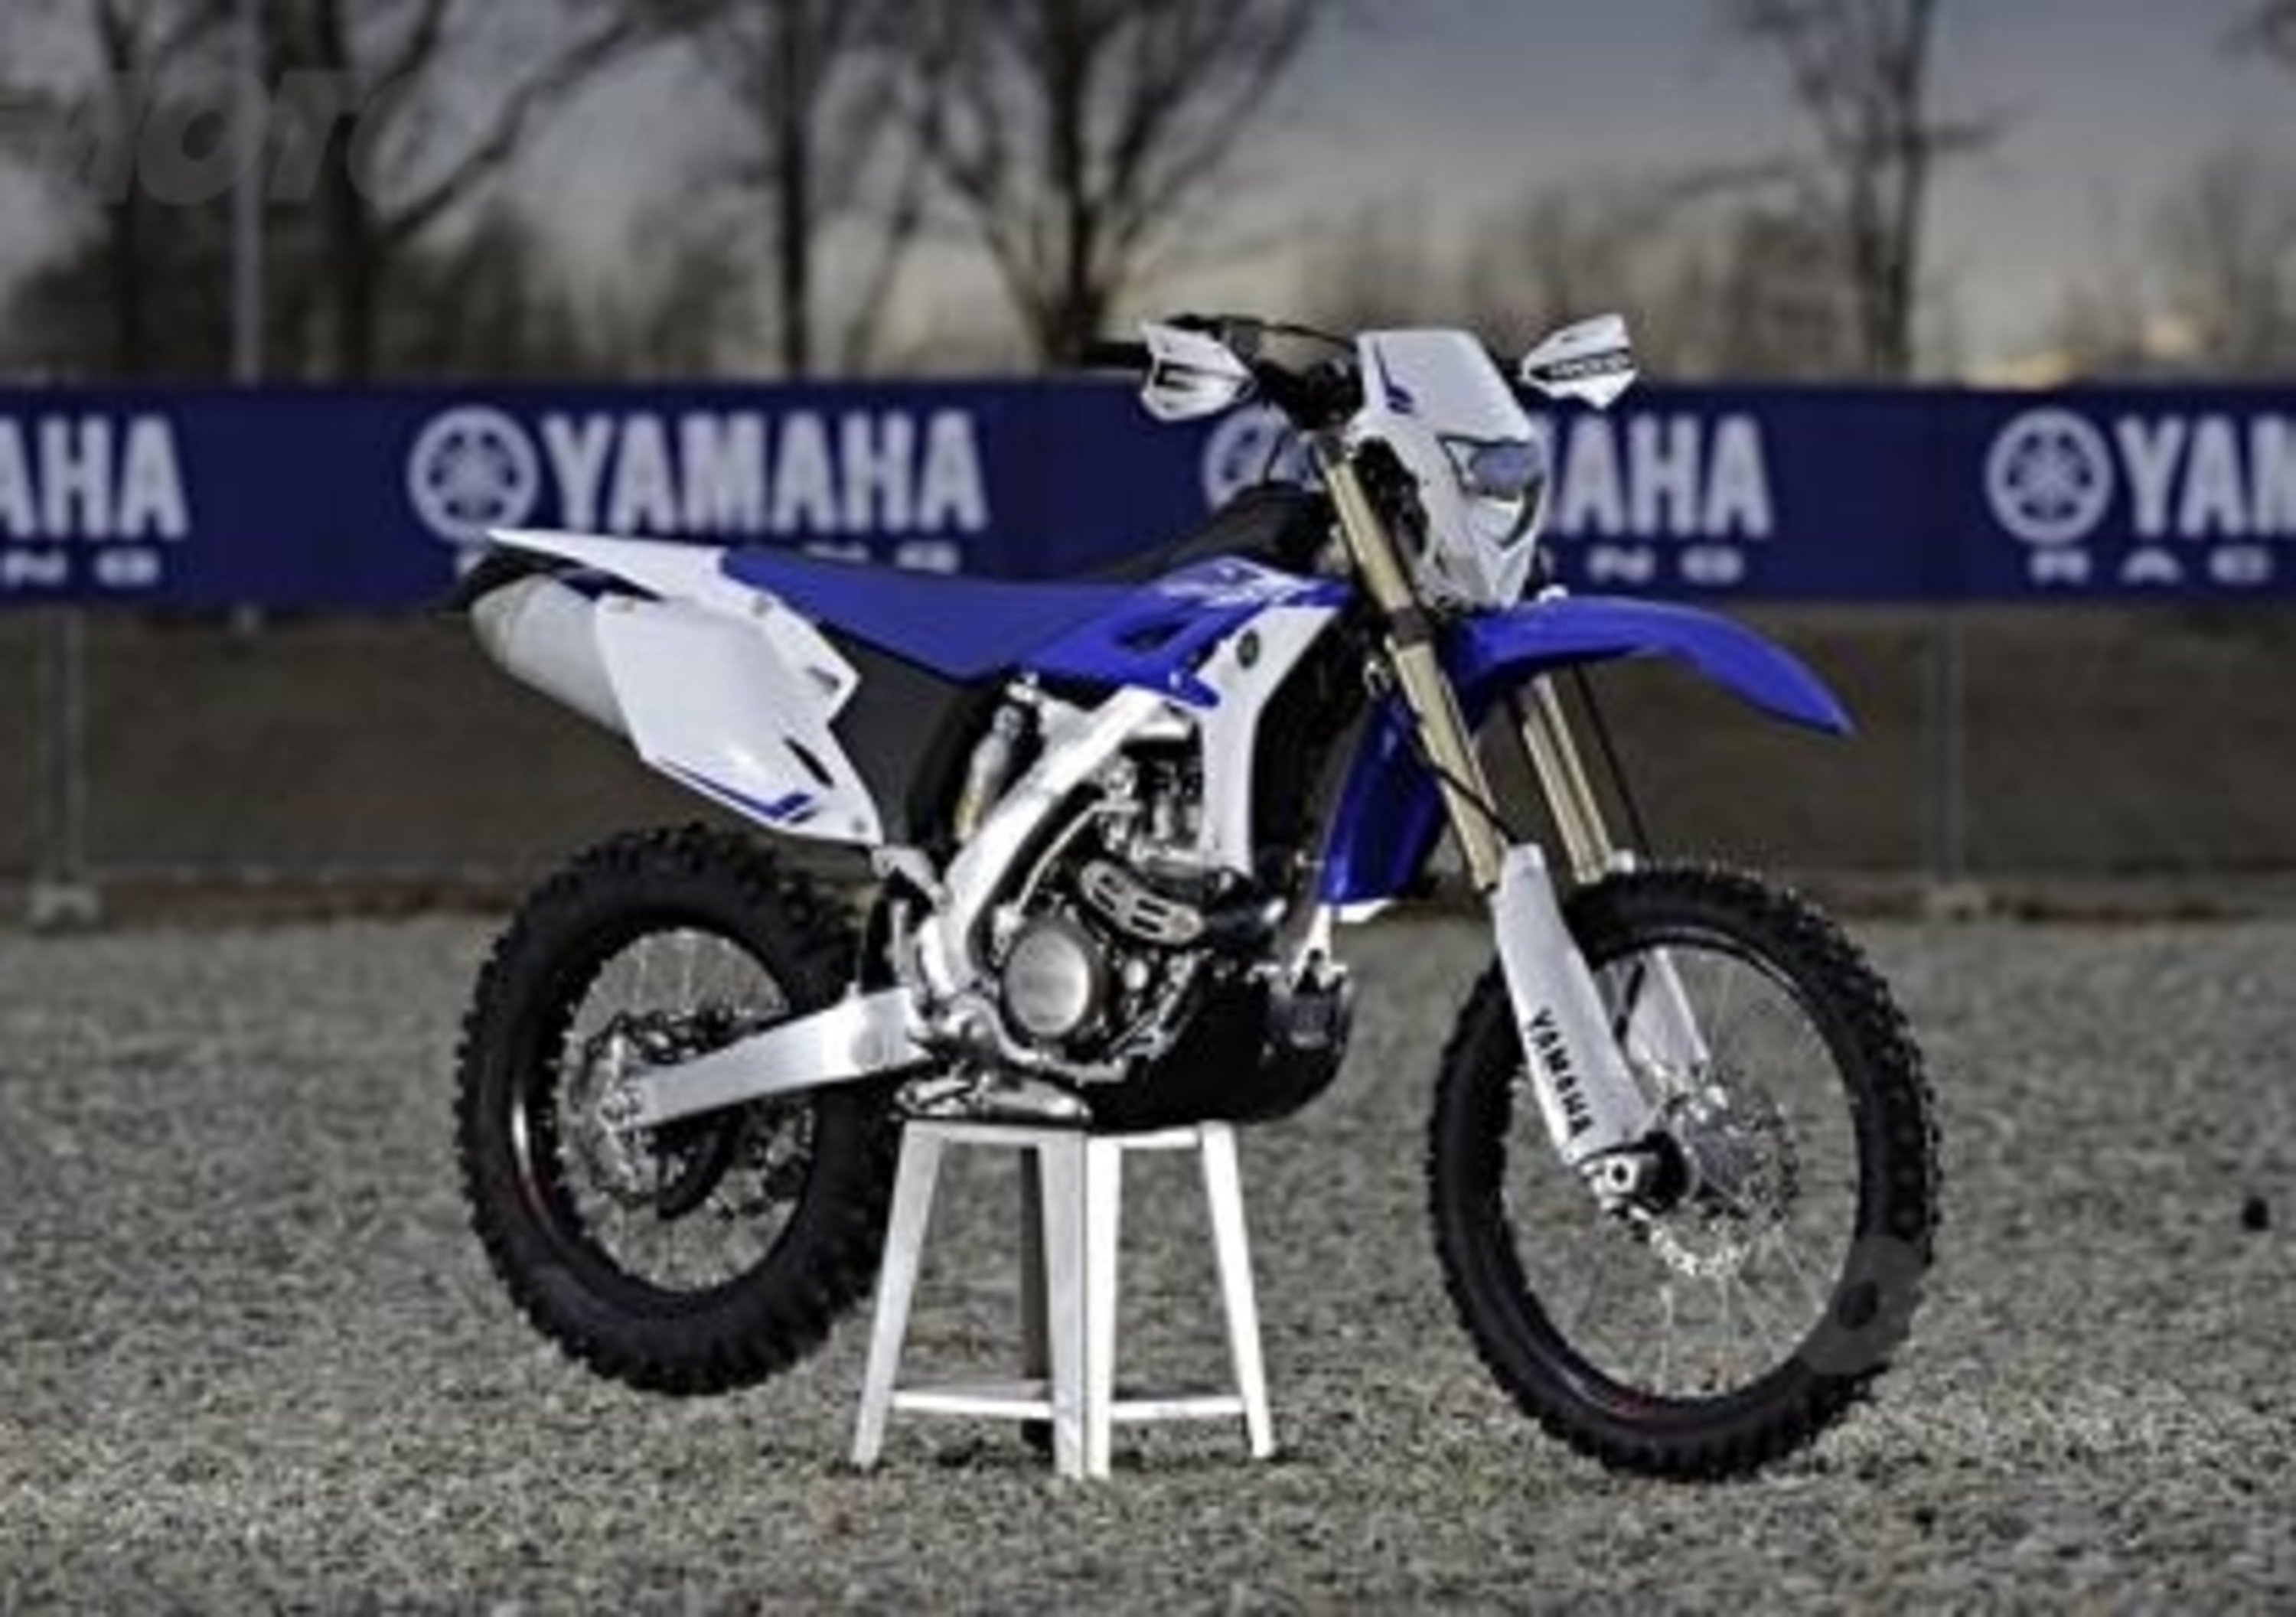 Yamaha WR 450F premiata per il suo design